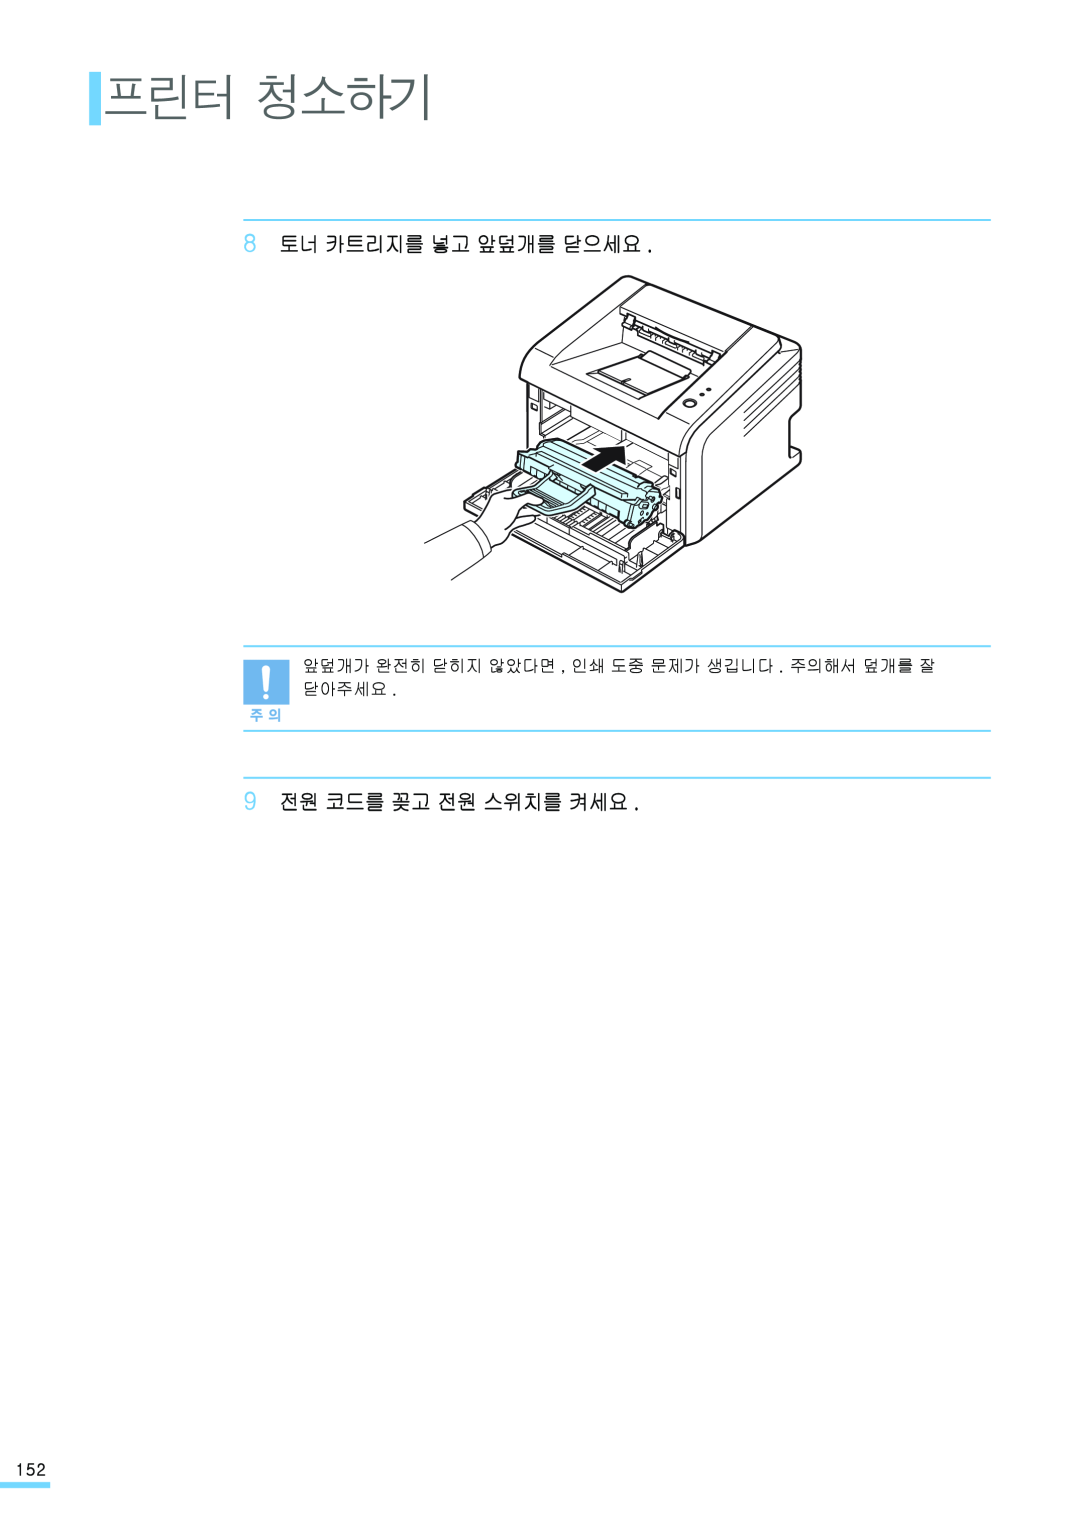 Samsung ML-2571N manual 프린터 청소하기, 8 토너 카트리지를 넣고 앞덮개를 닫으세요, 9 전원 코드를 꽂고 전원 스위치를 켜세요 